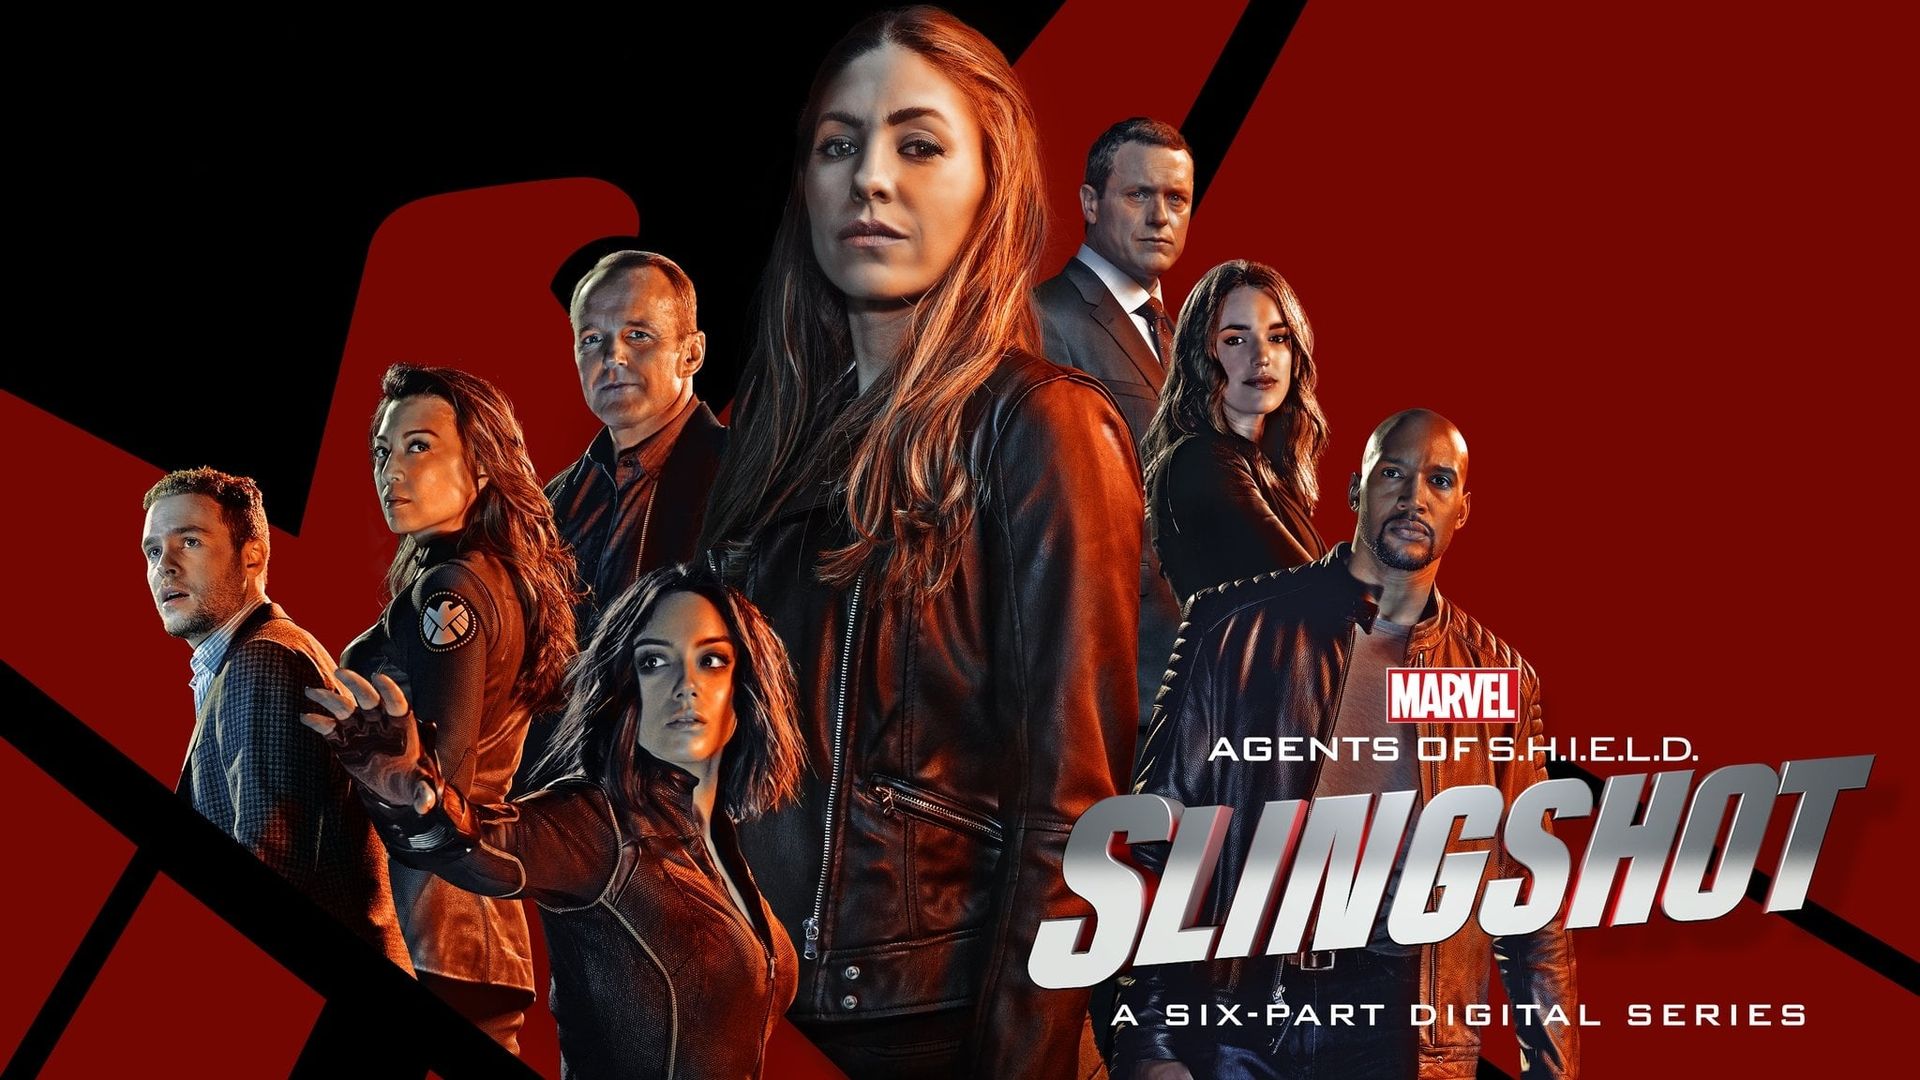 Agents of S.H.I.E.L.D.: Slingshot background